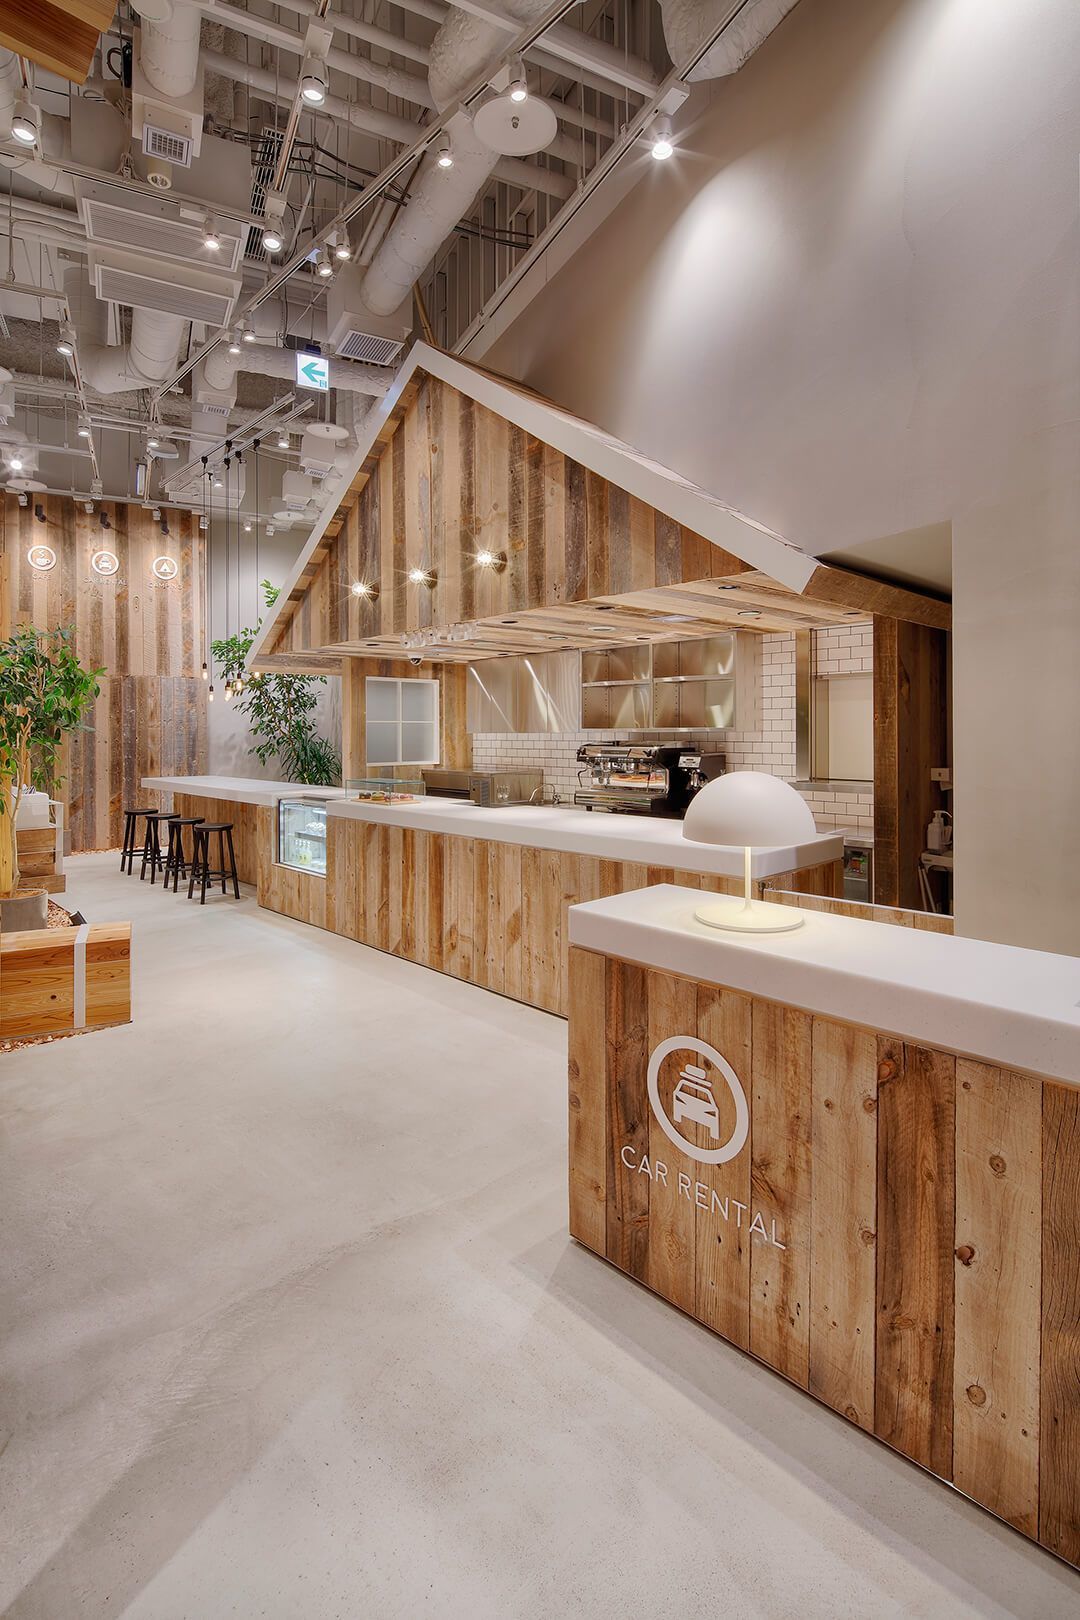 Thiết kế quán cafe độc lạ với tạo hình ngôi nhà gỗ dễ thương